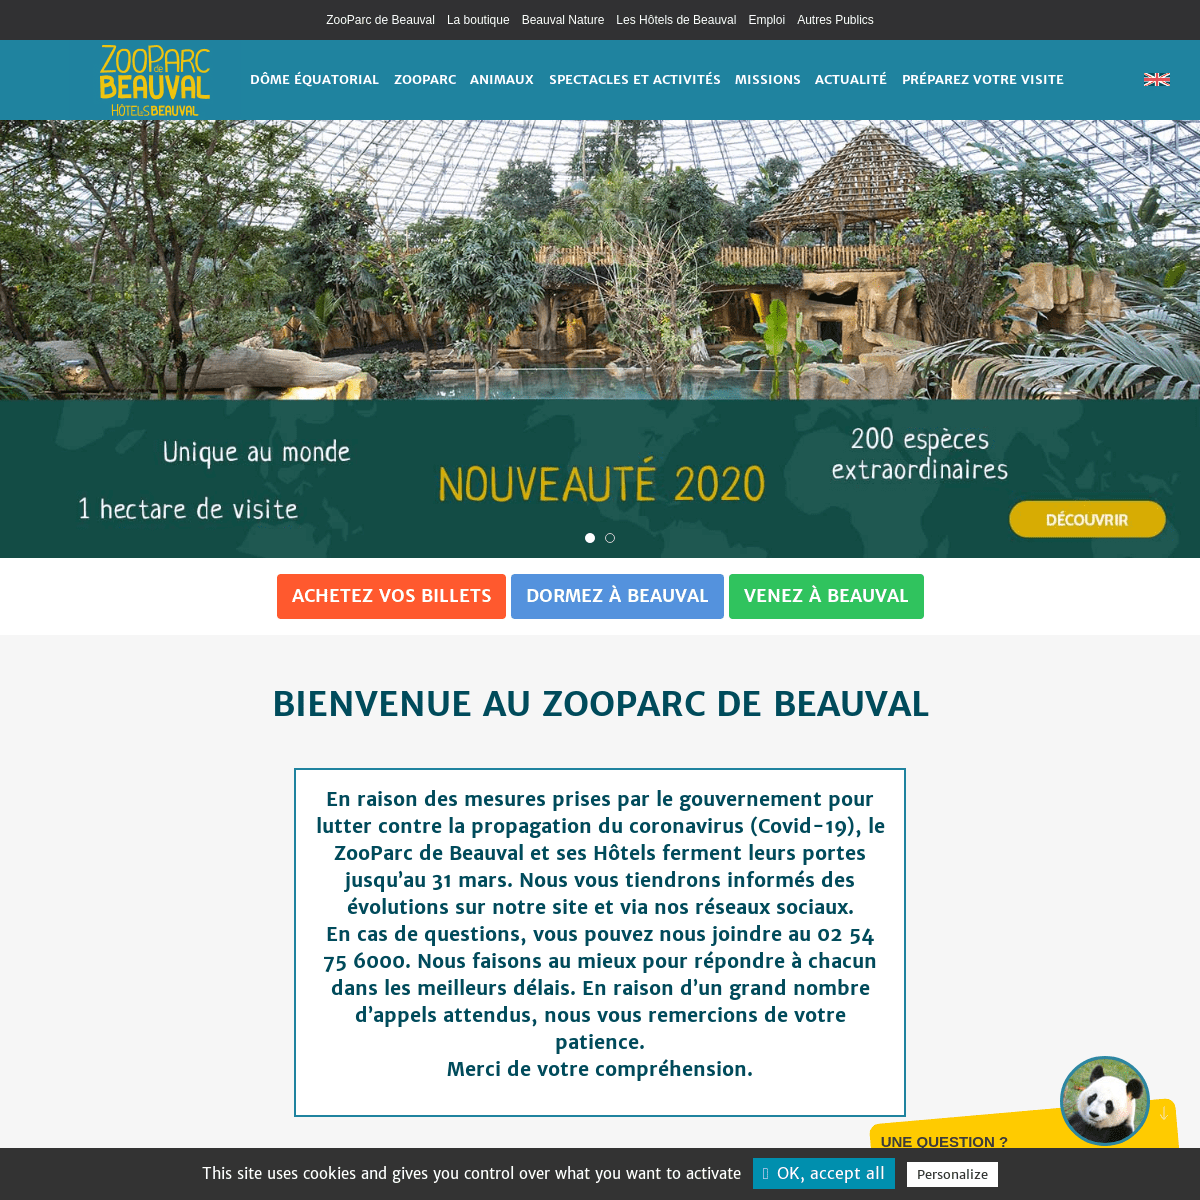 Le plus beau zoo de France - ZooParc de Beauval